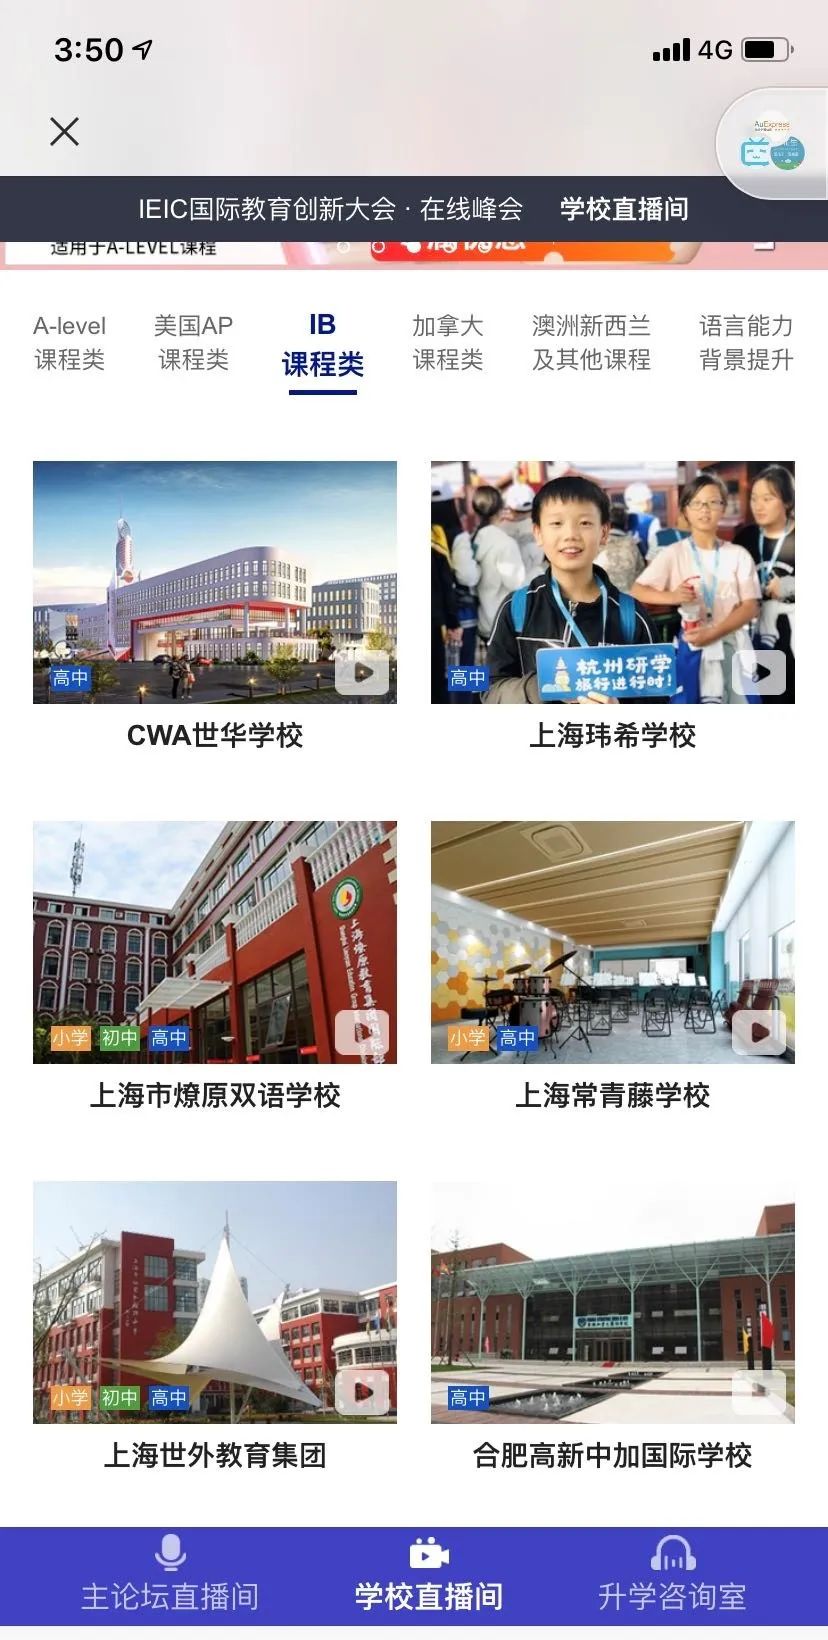 《上海站》IEIC国际教育在线峰会